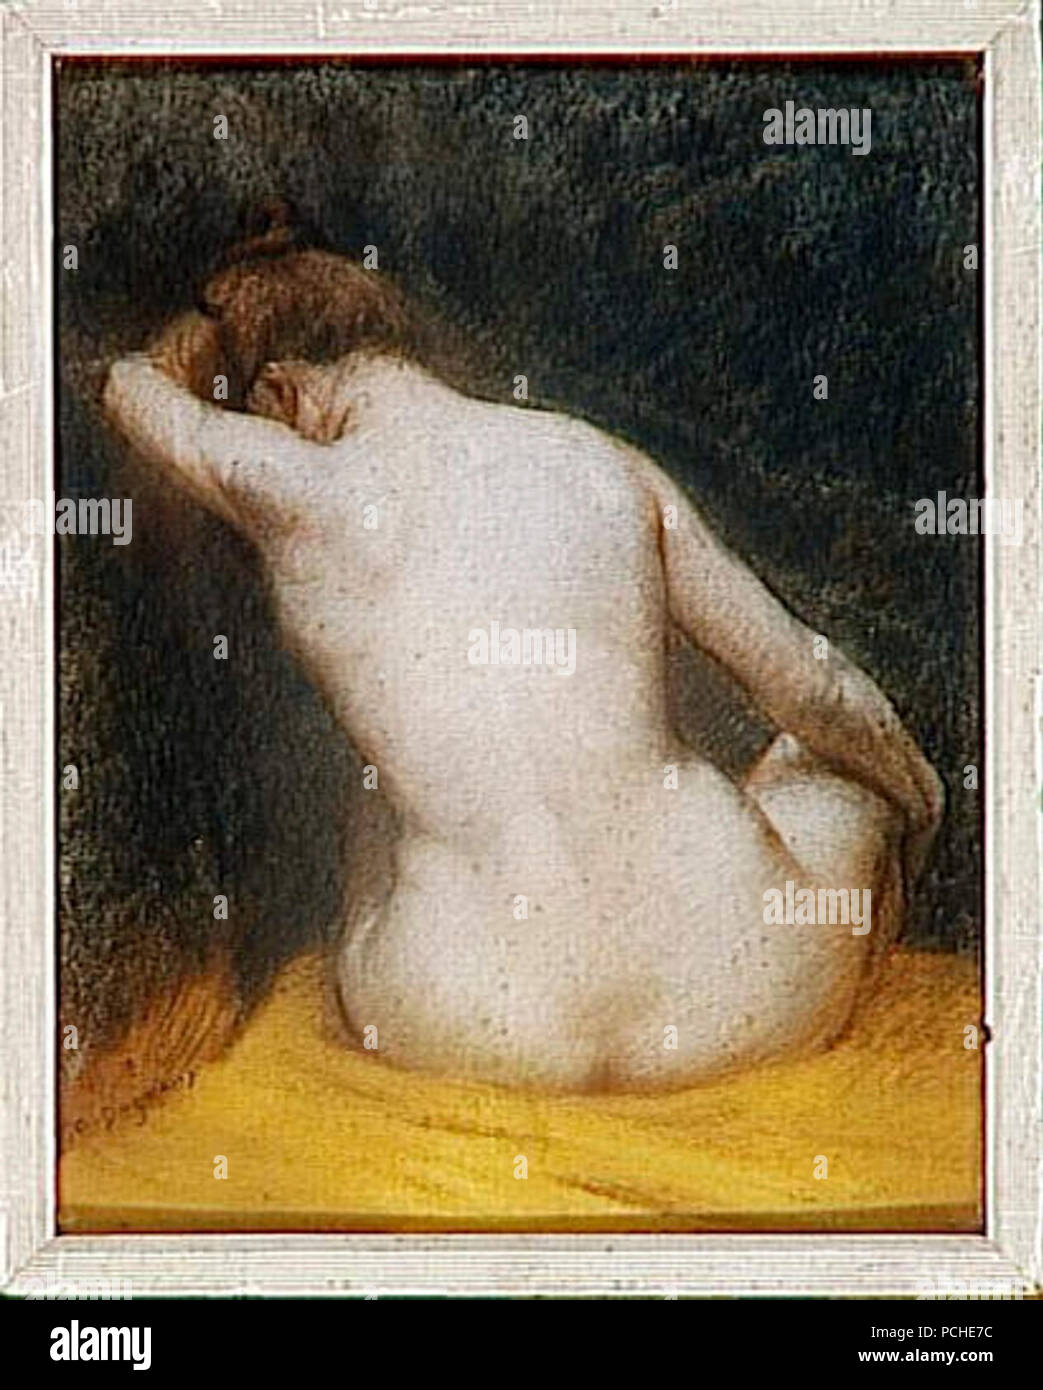 Albert Dagnaux - Femme nue assise de dos. Stock Photo